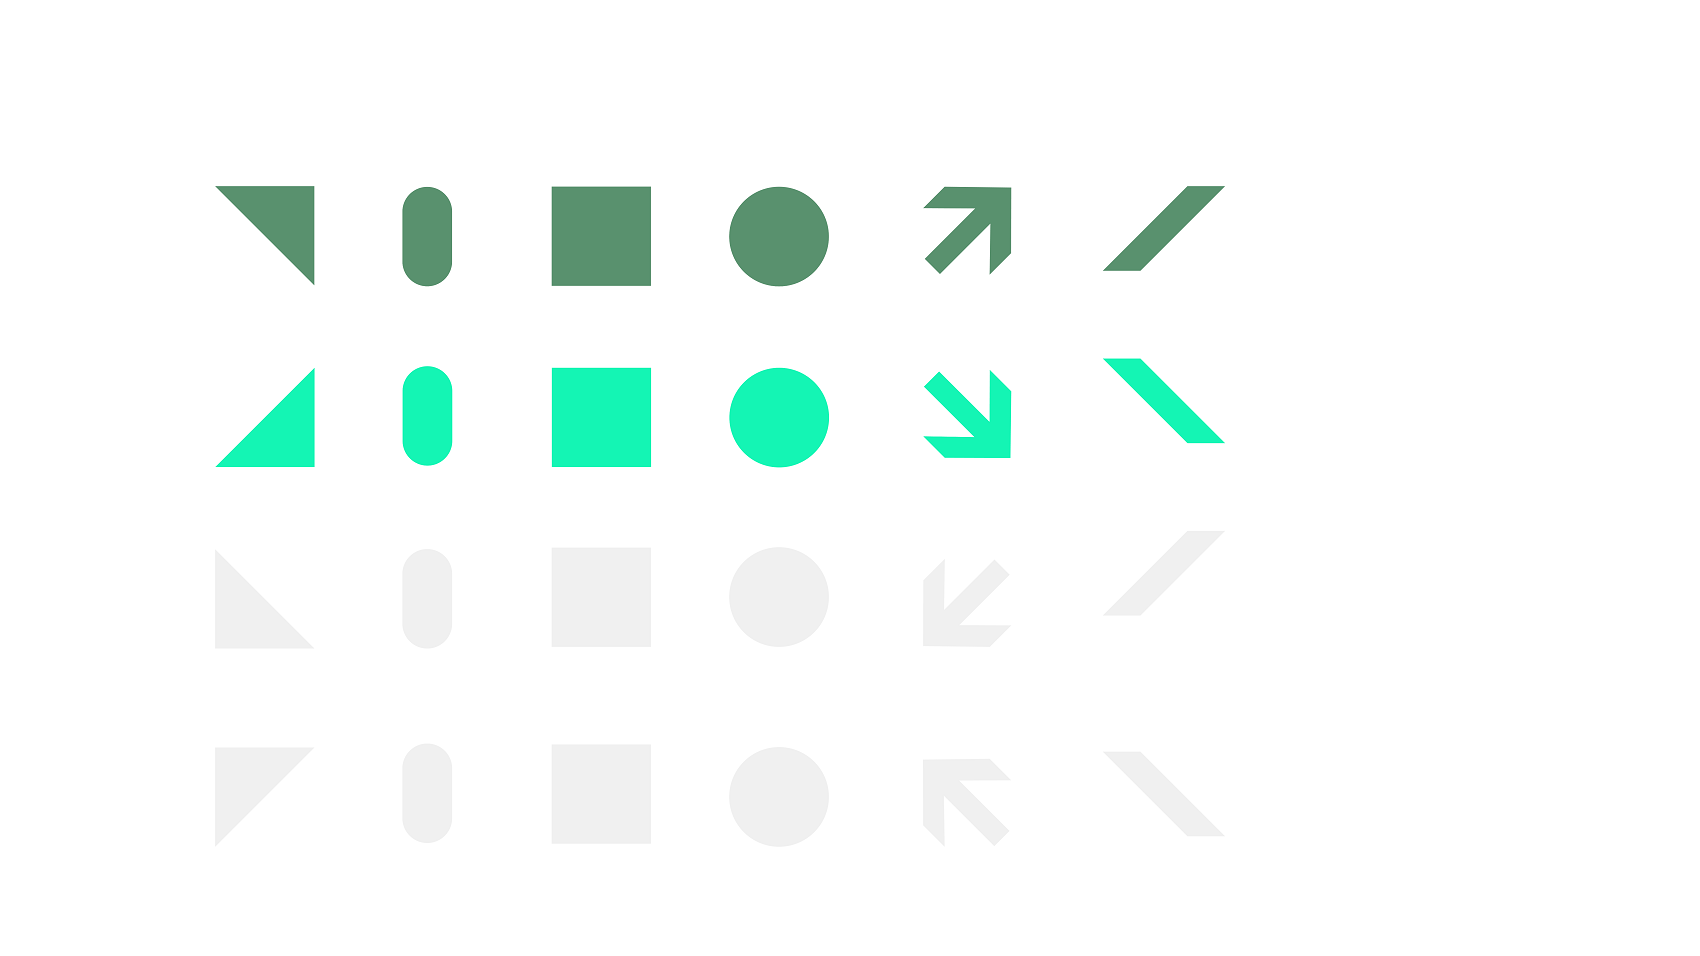 Dunkelgrüne, hellgrüne und hellgraue geometrische Formen auf einem weißen Hintergrund